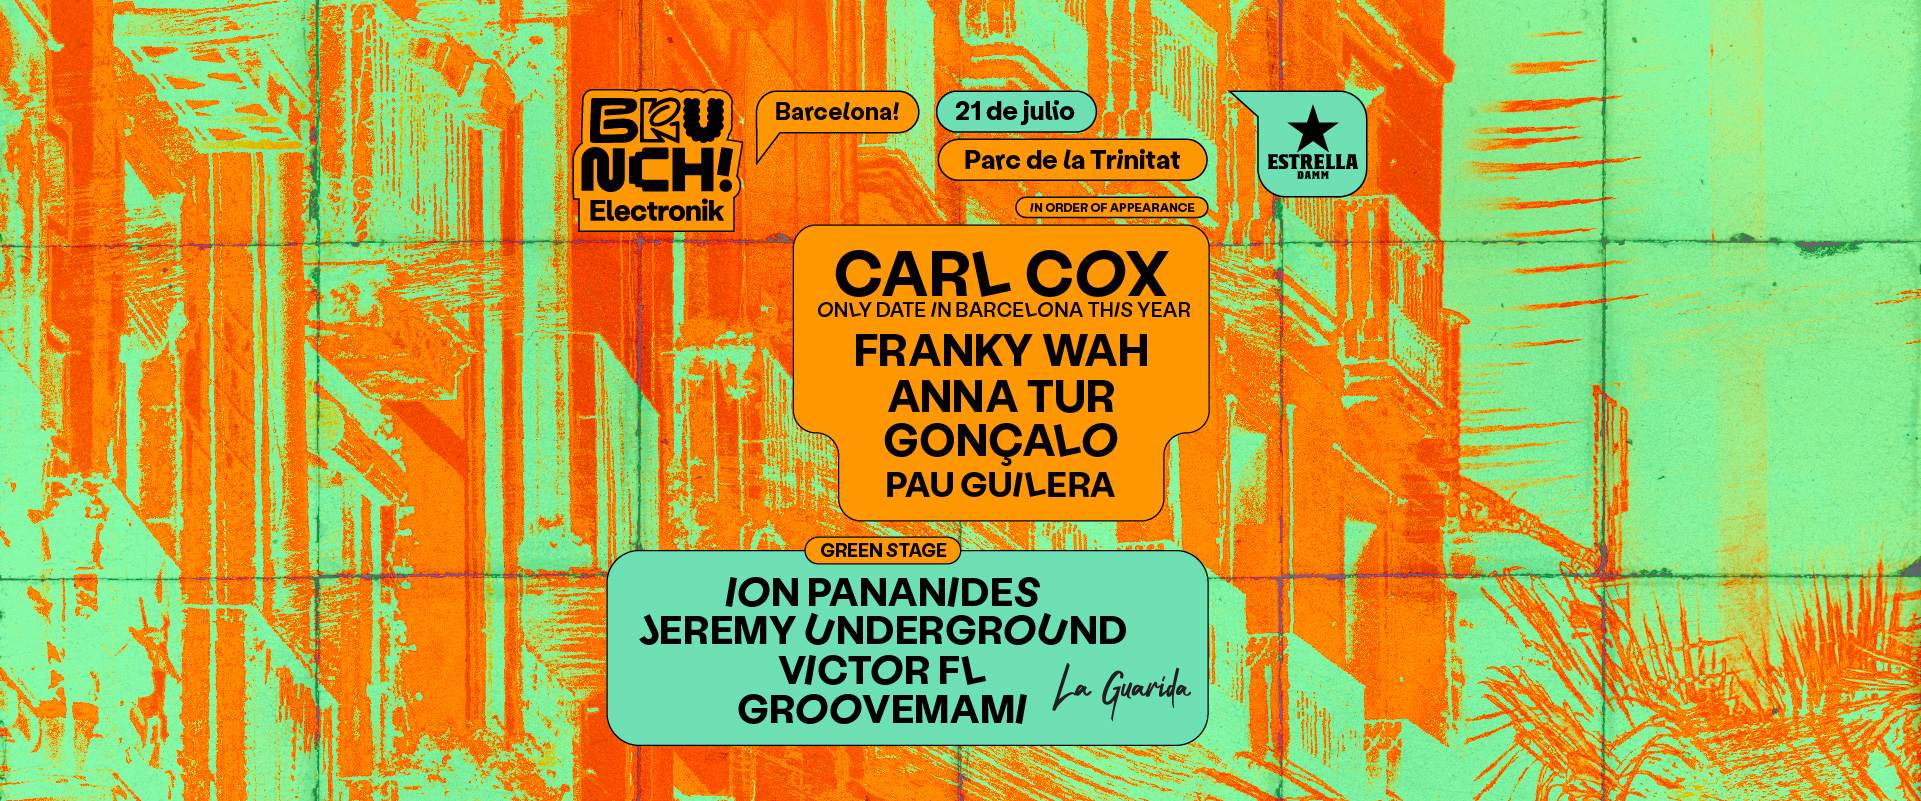 Brunch Electronik Barcelona #12 Carl Cox, Franky Wah, Anna Tur, Gonzalo, Pau Guilera y más - Página frontal